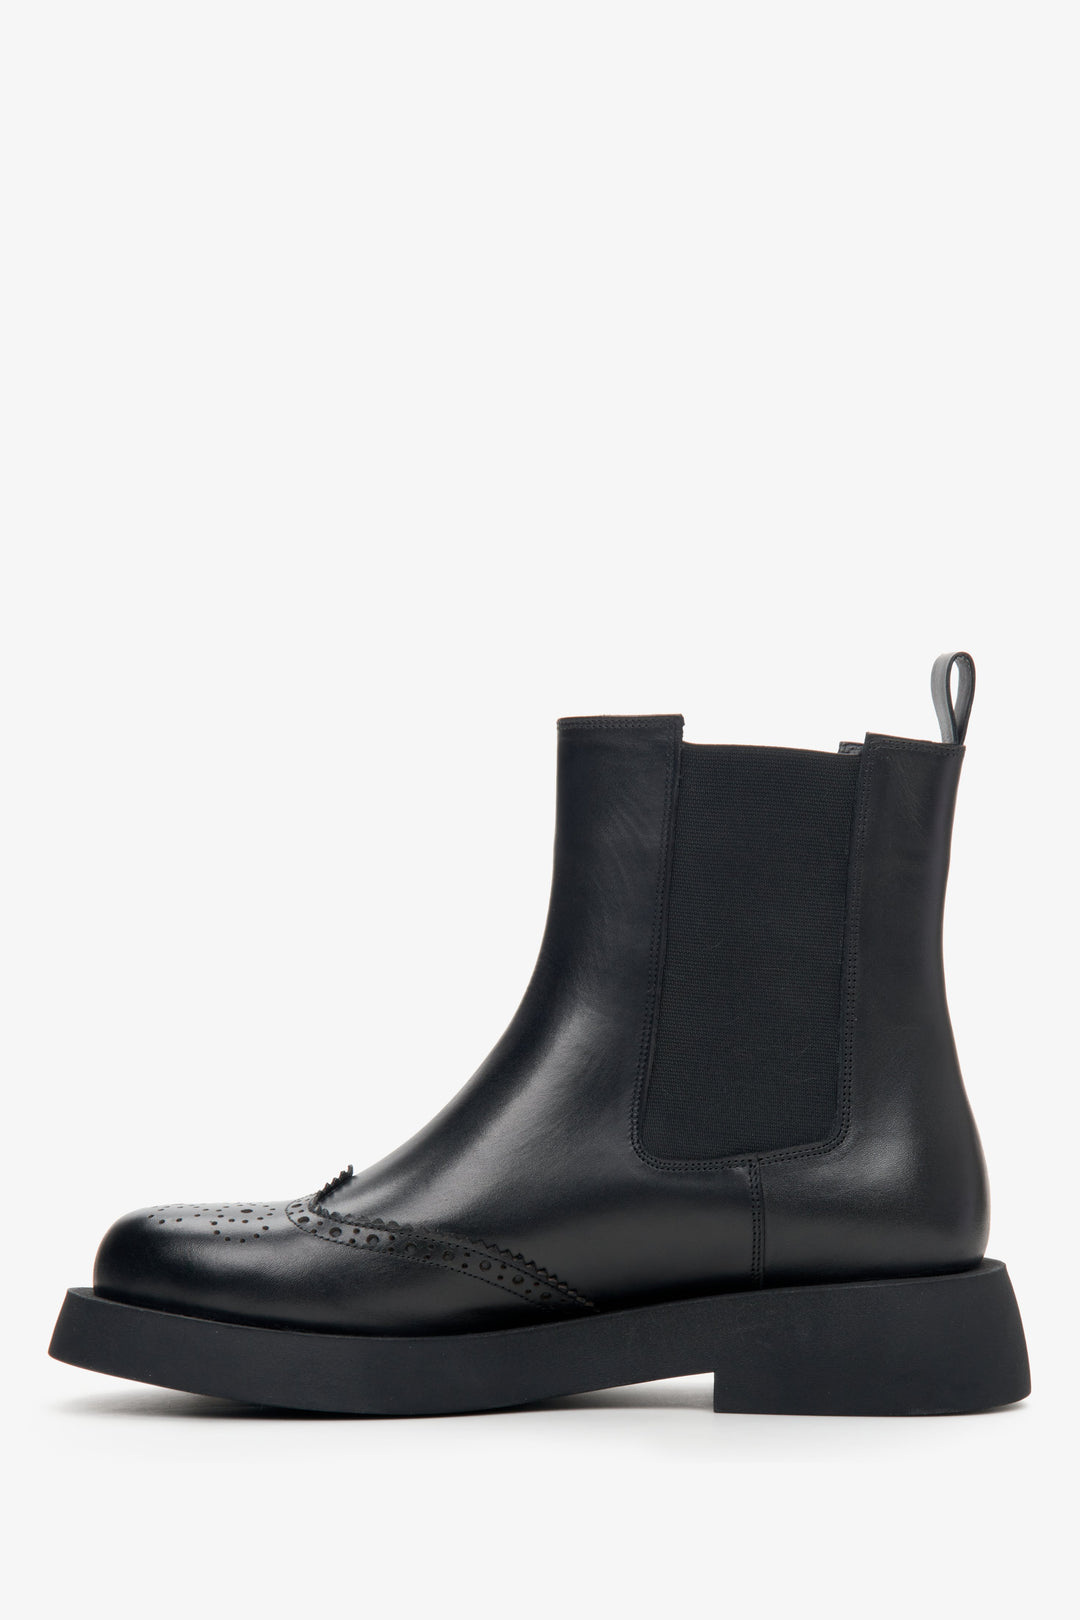 Estro women's  black leather Chelsea boots - shoe profile.